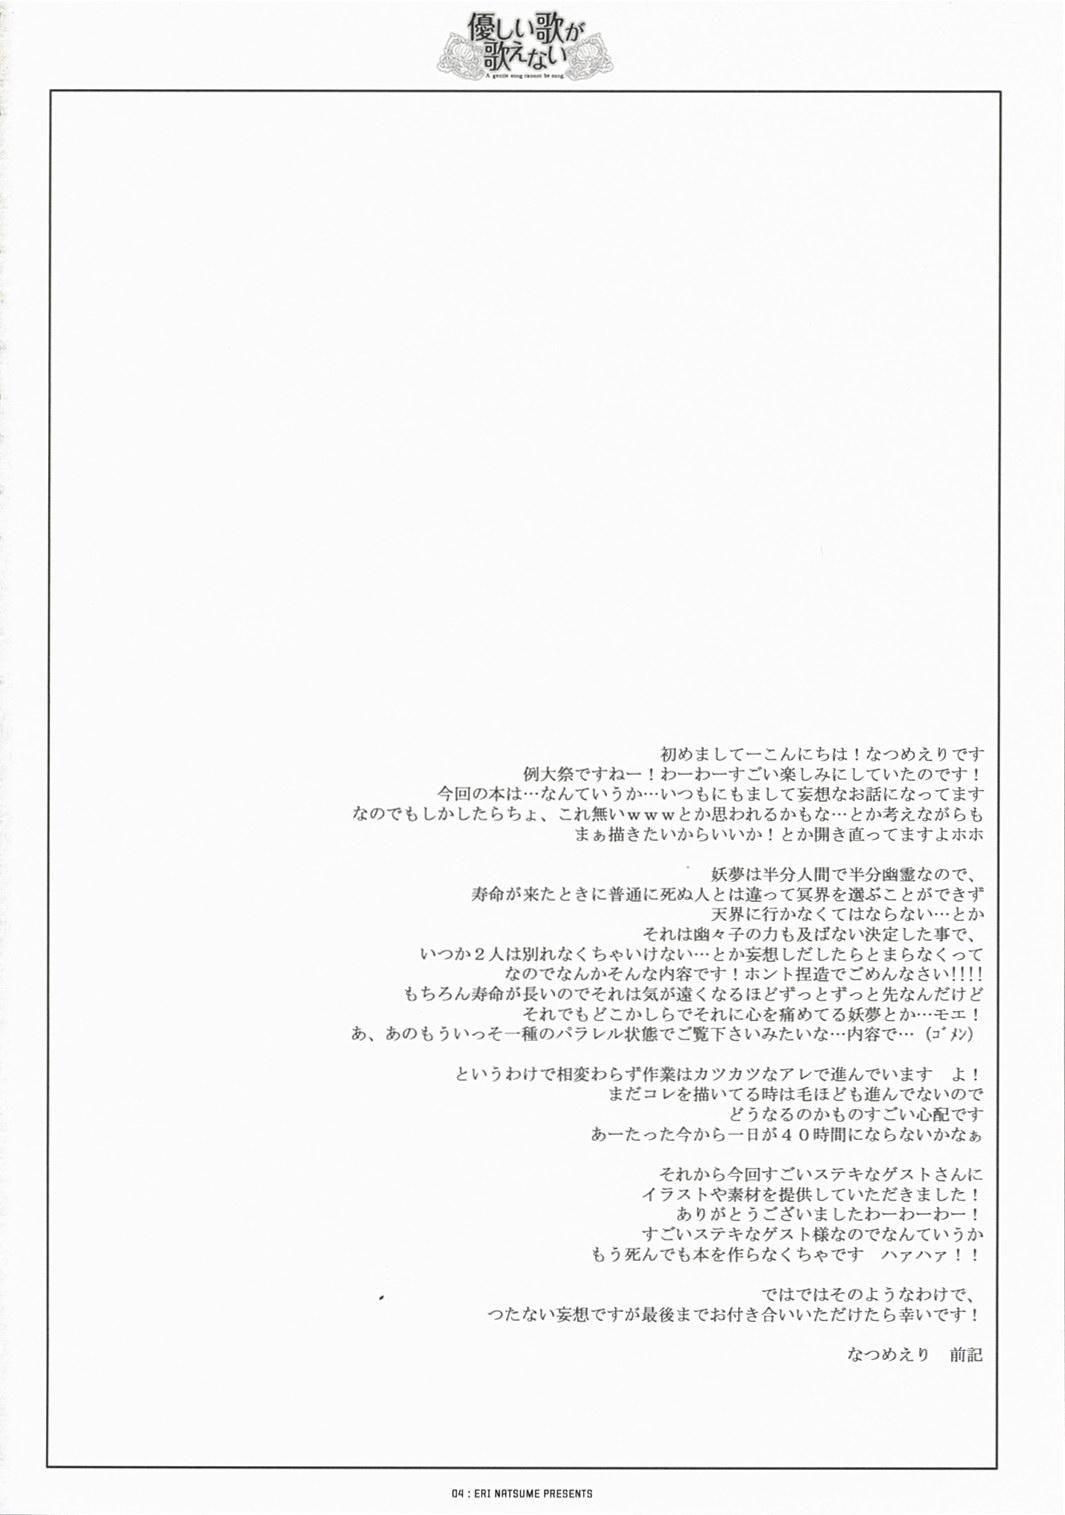 Suckingdick Yasashii uta ga utaenai | A Gentle Song Cannot Be Sung - Touhou project Breast - Page 4